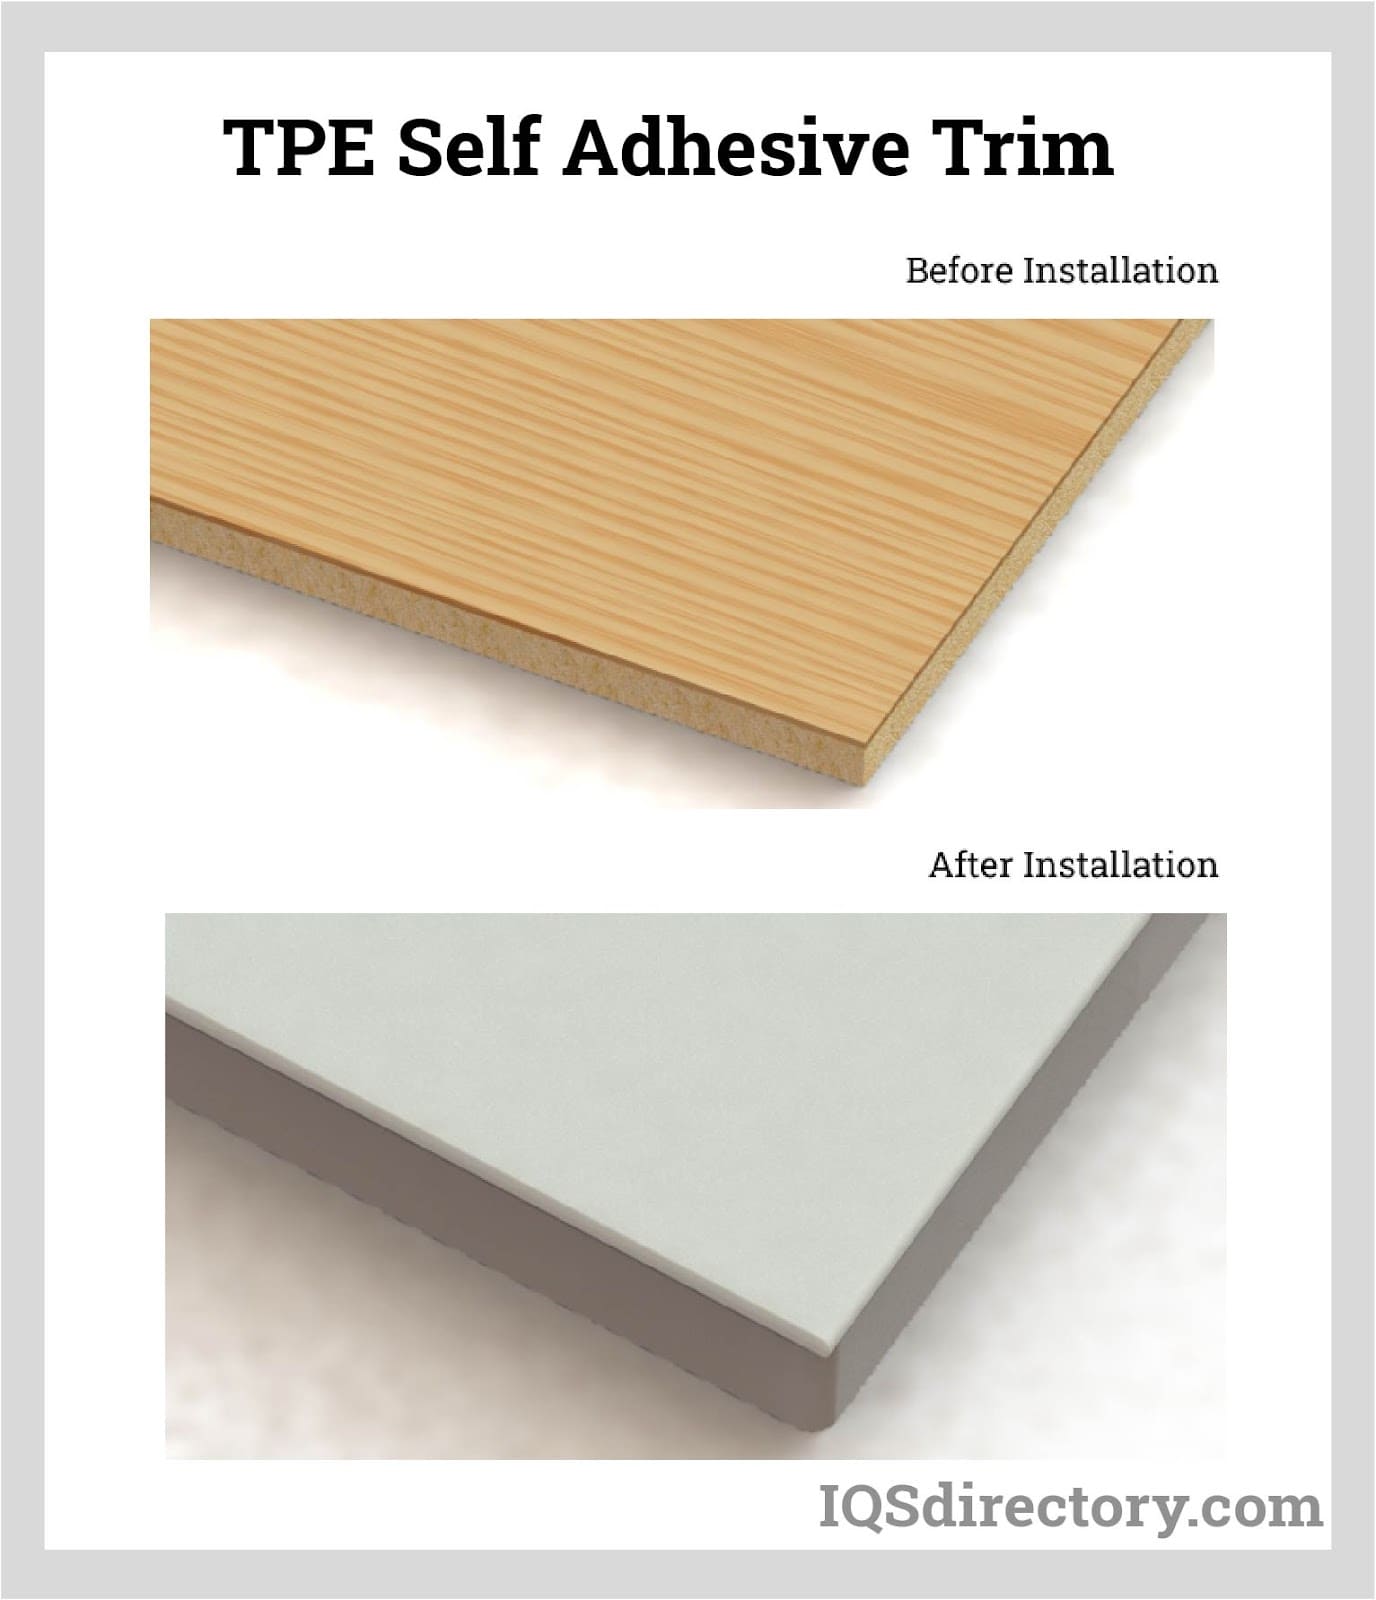 TPE Self Adhesive Trim